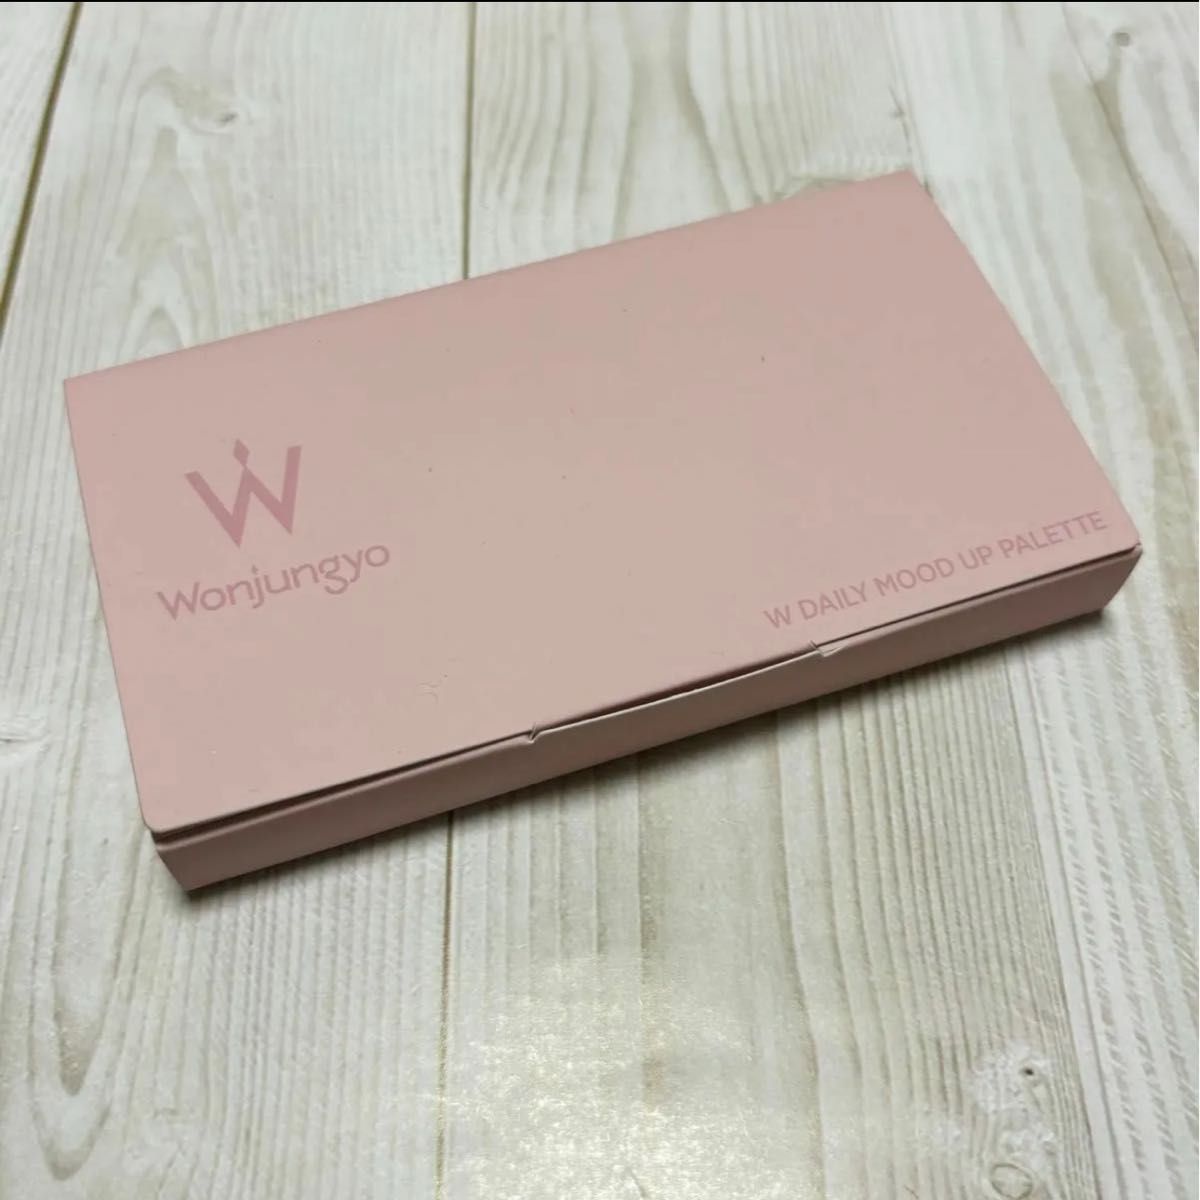 Wonjungyo ウォンジョンヨ Ｗデイリームードアップパレット 新色 04 クライローズ